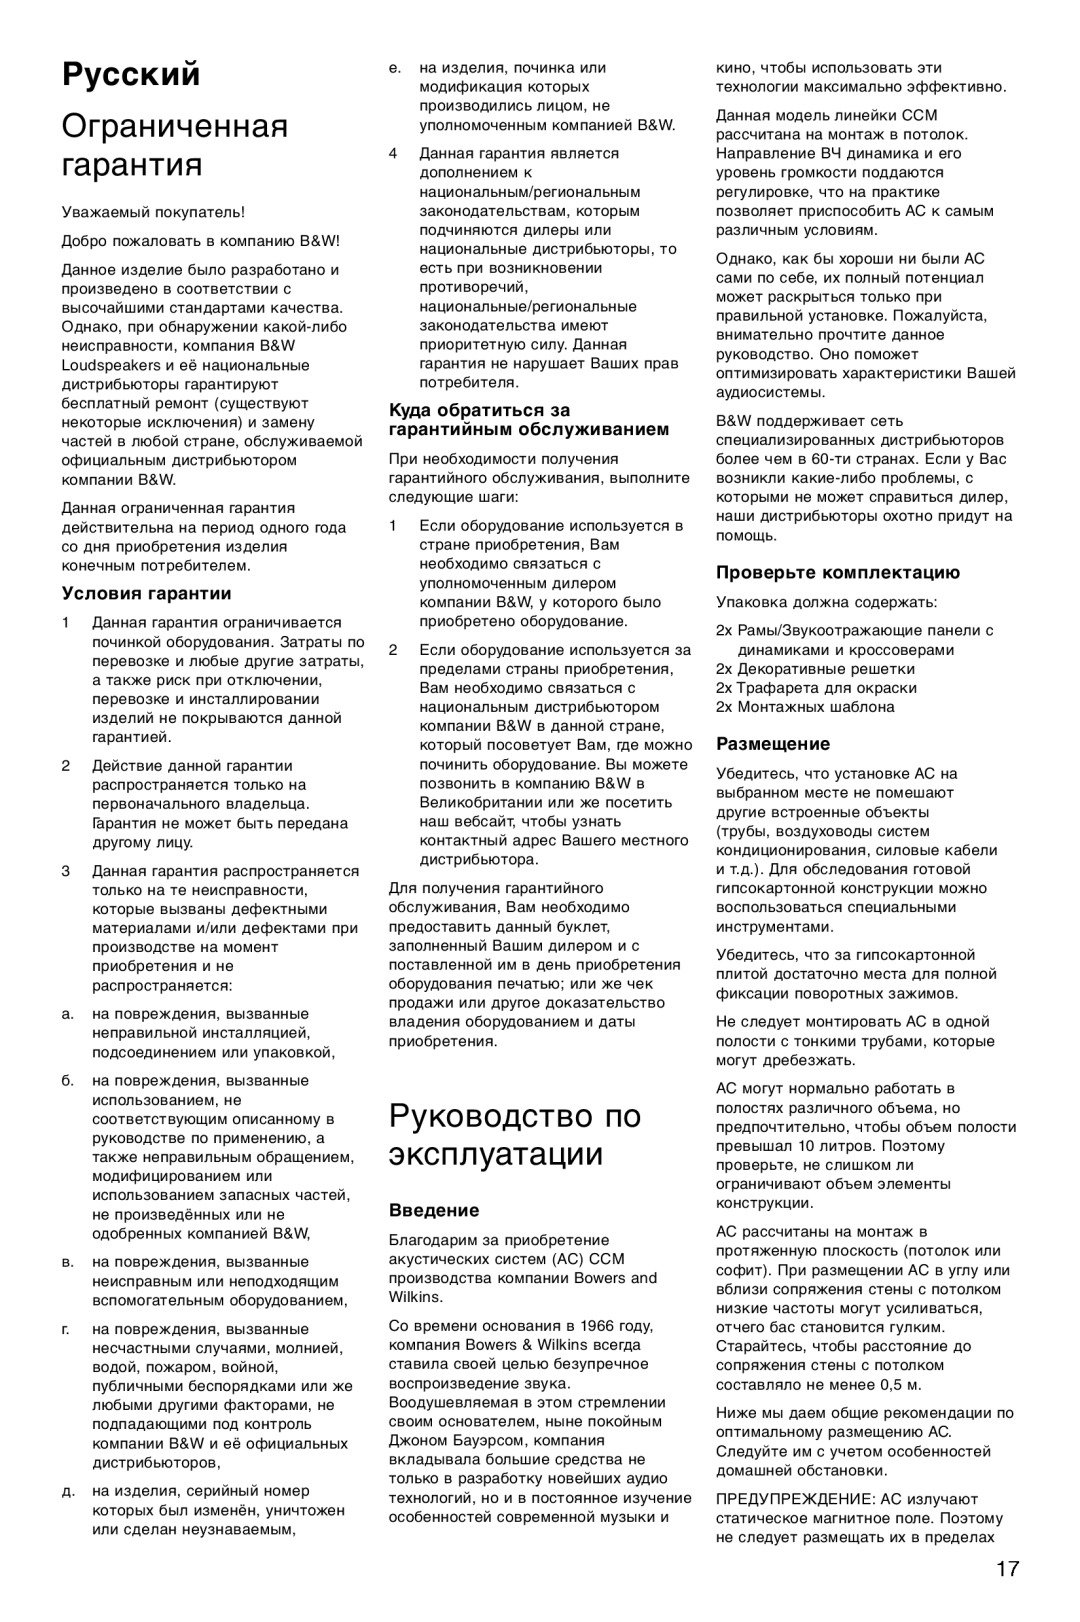 Bowers & Wilkins CCM-628 Русский, Ограниченная гарантия, Руководство по эксплуатации, Условия гарантии, Введение 